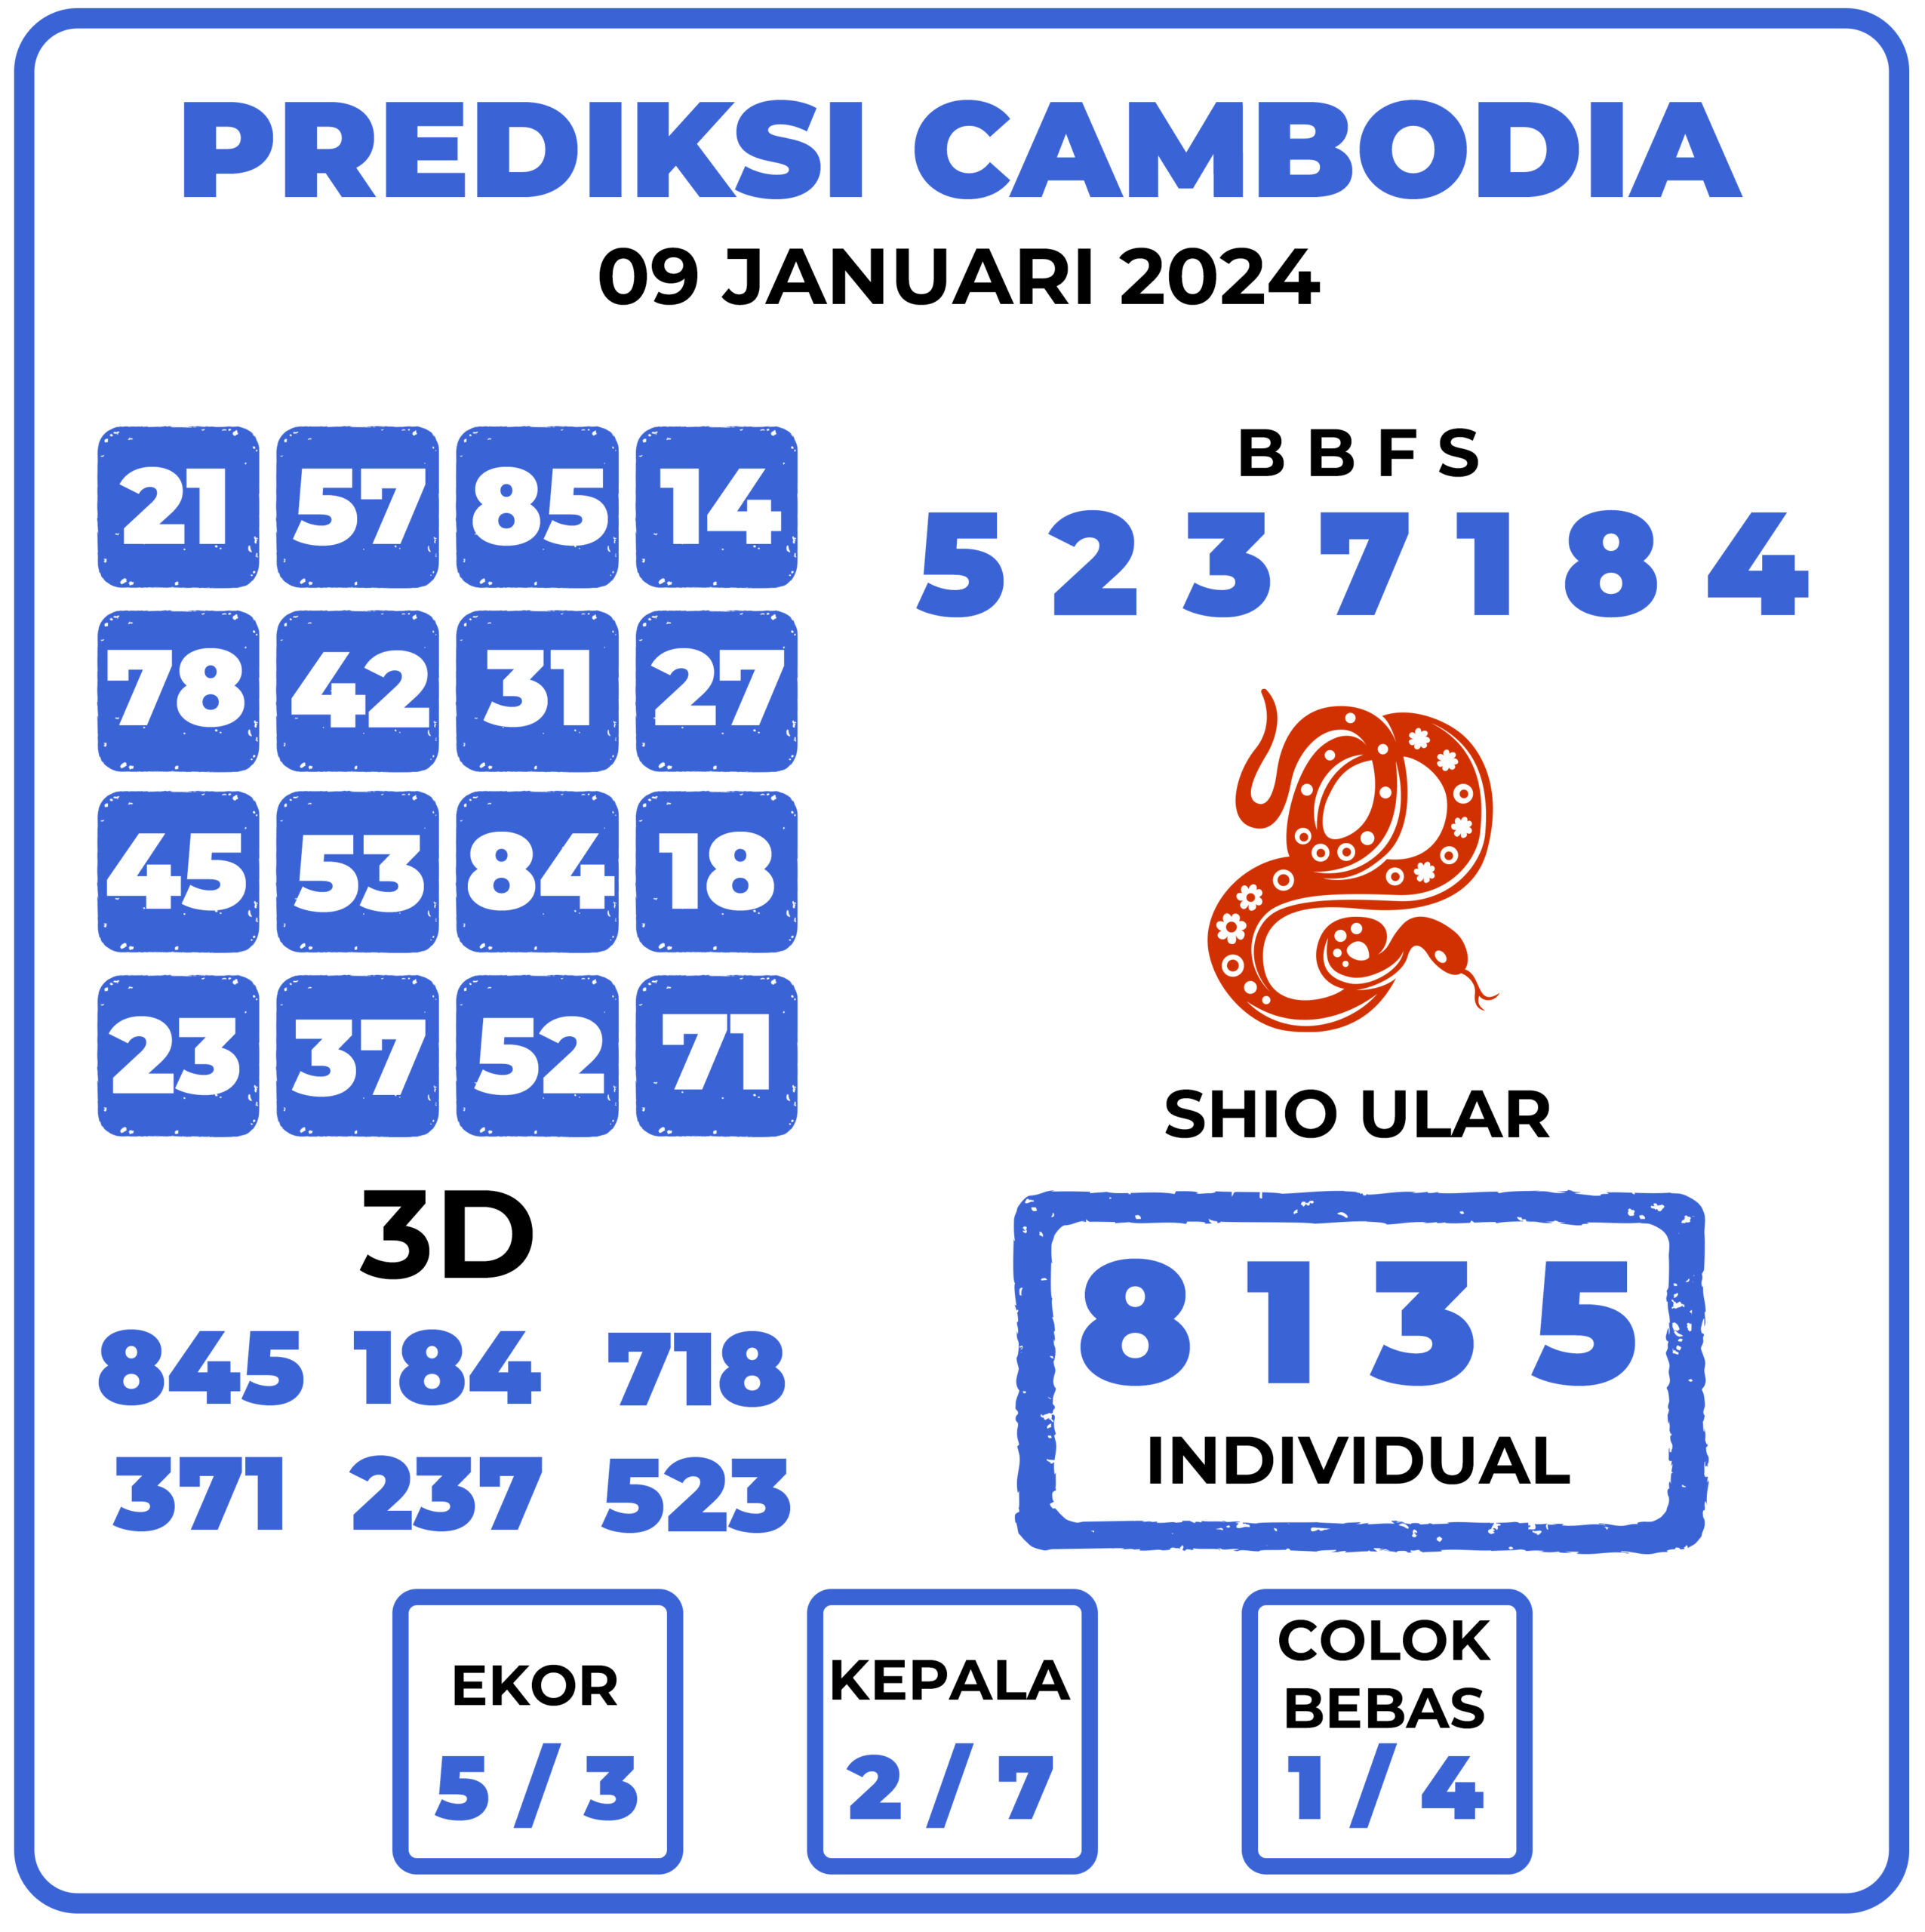 Prediksi Togel Cambodia 09 Januari 2024